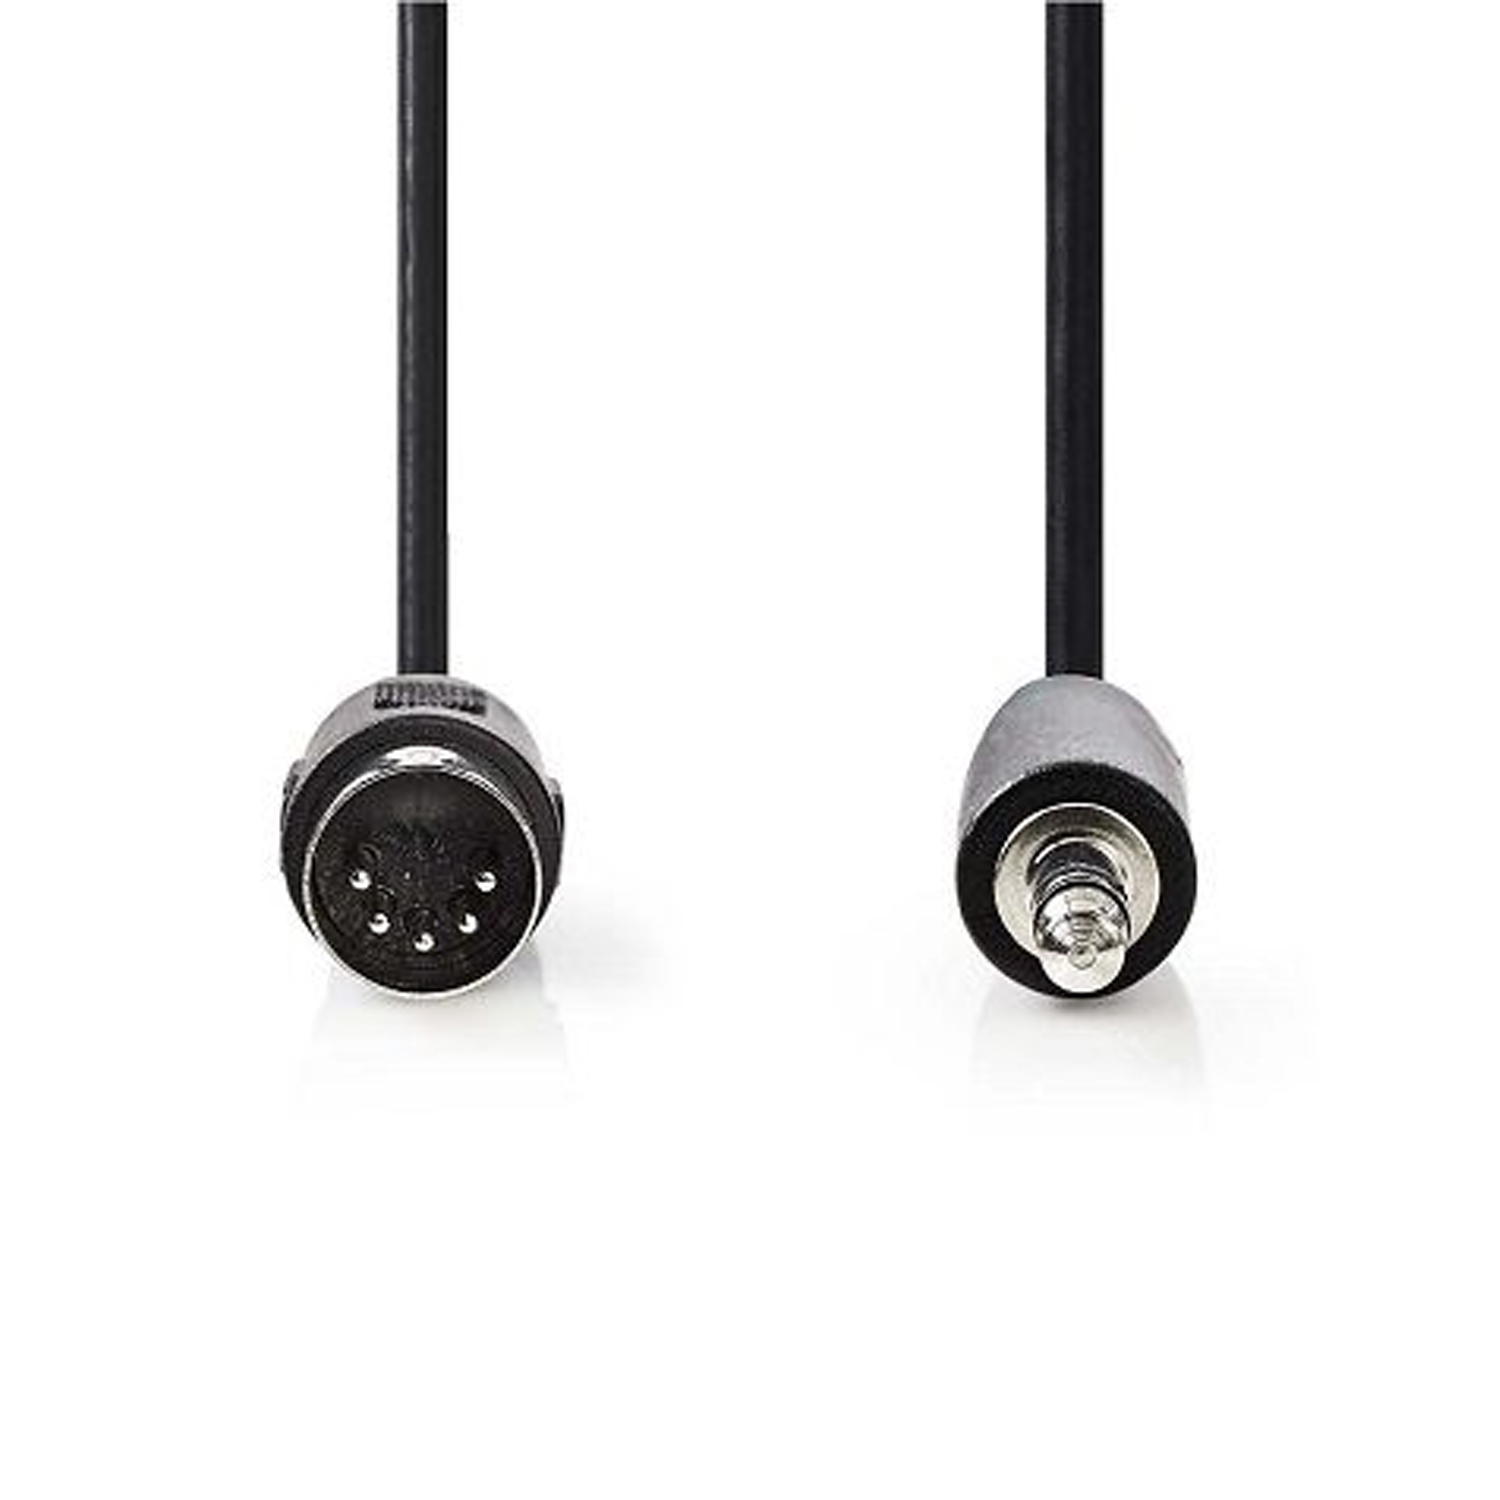 Cable de audio DIN 5 pines - jack 3.5 mm 2 M Negro